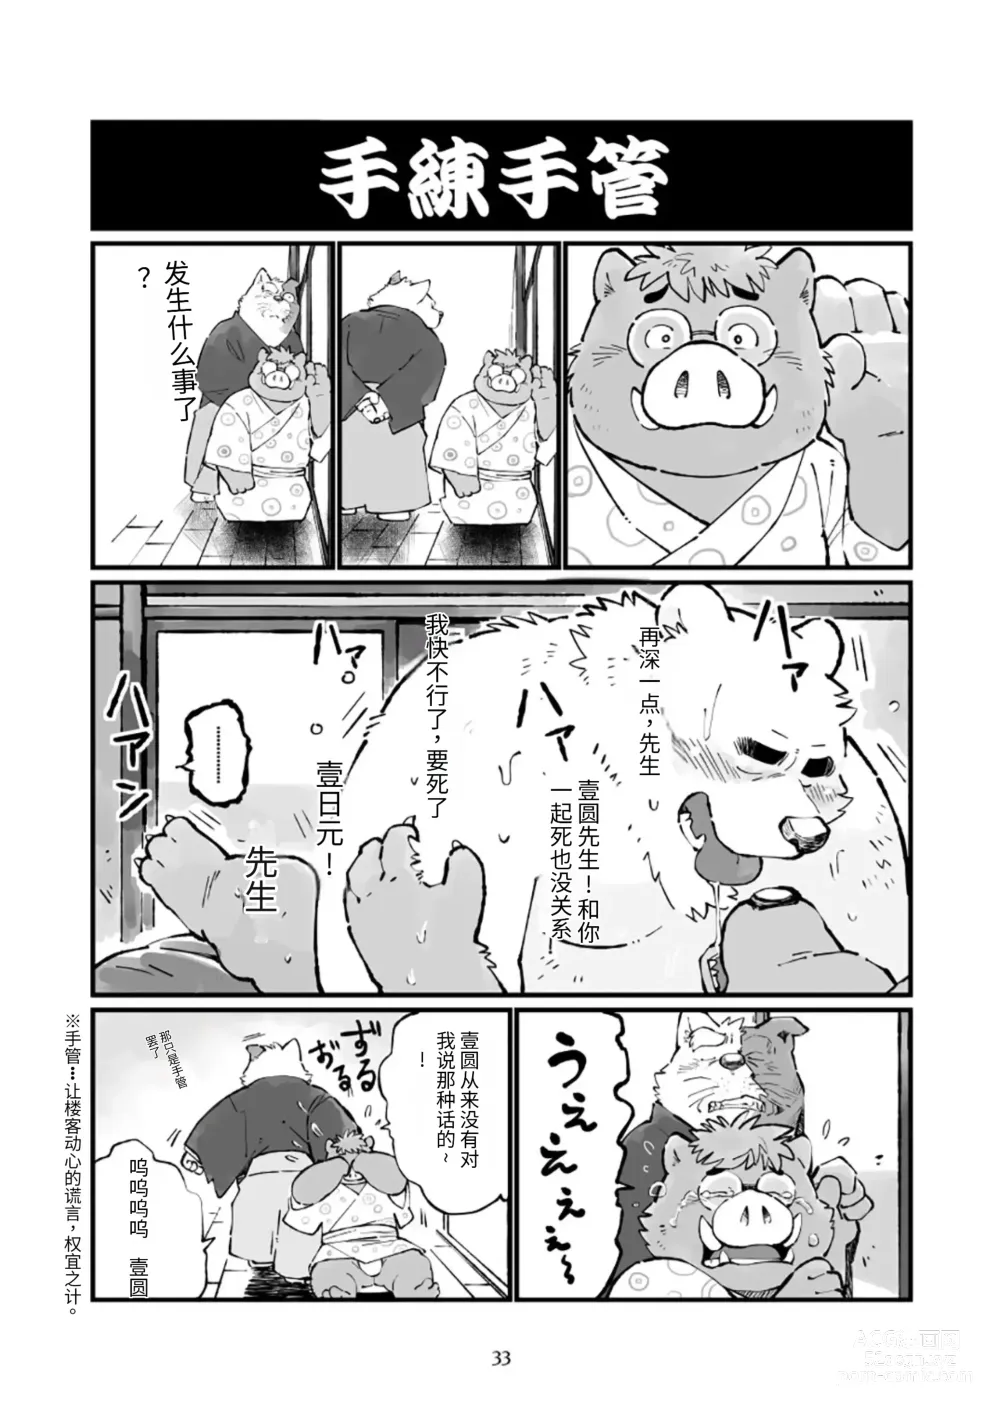 Page 33 of doujinshi 狗津原细见